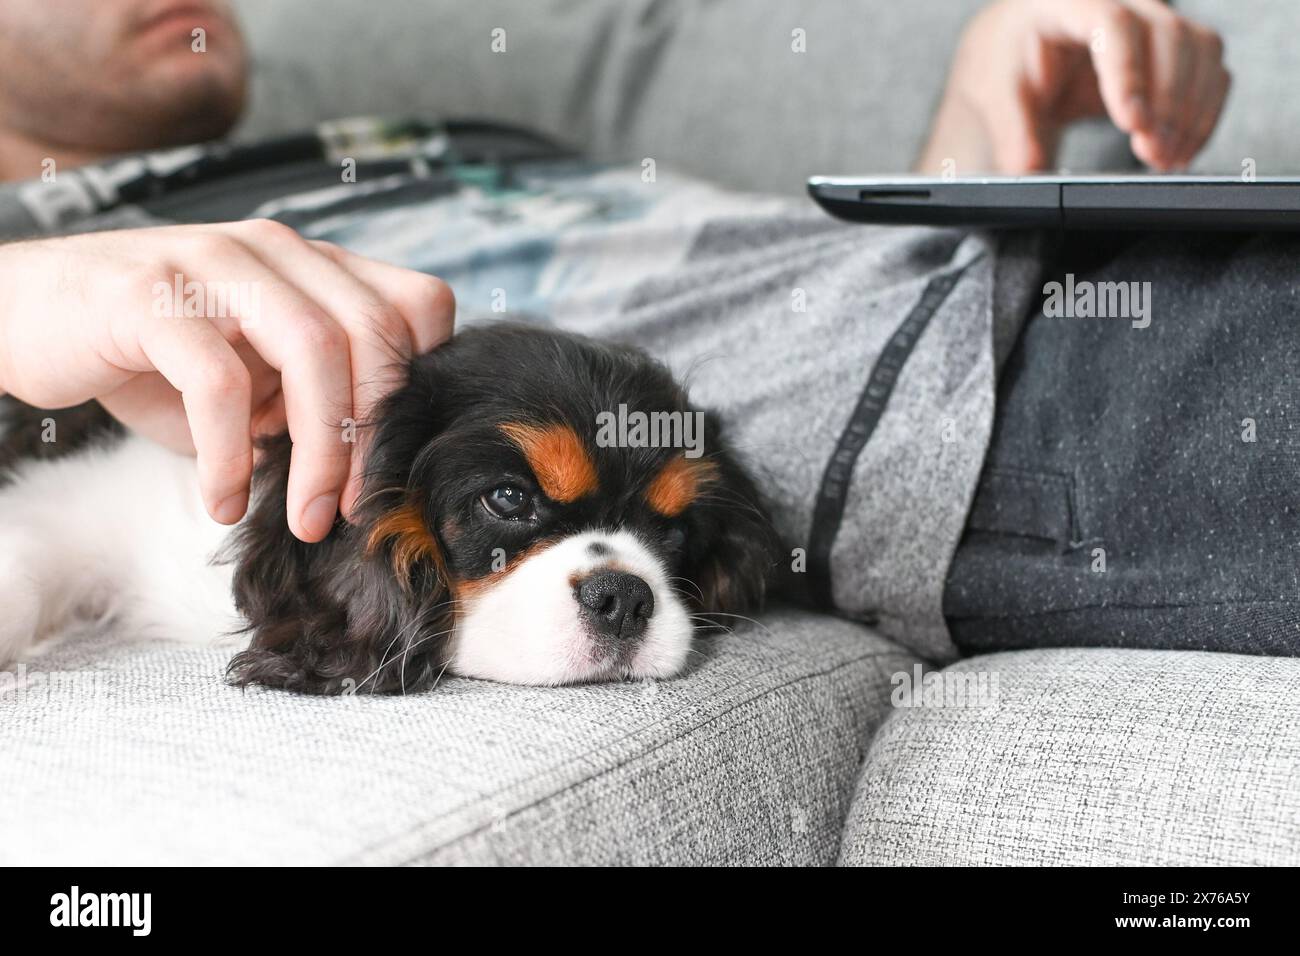 Der kleine Kavalier Charles King Spaniel Hündchen liegt auf dem Bett, und sein Besitzer arbeitet an einem Laptop Stockfoto